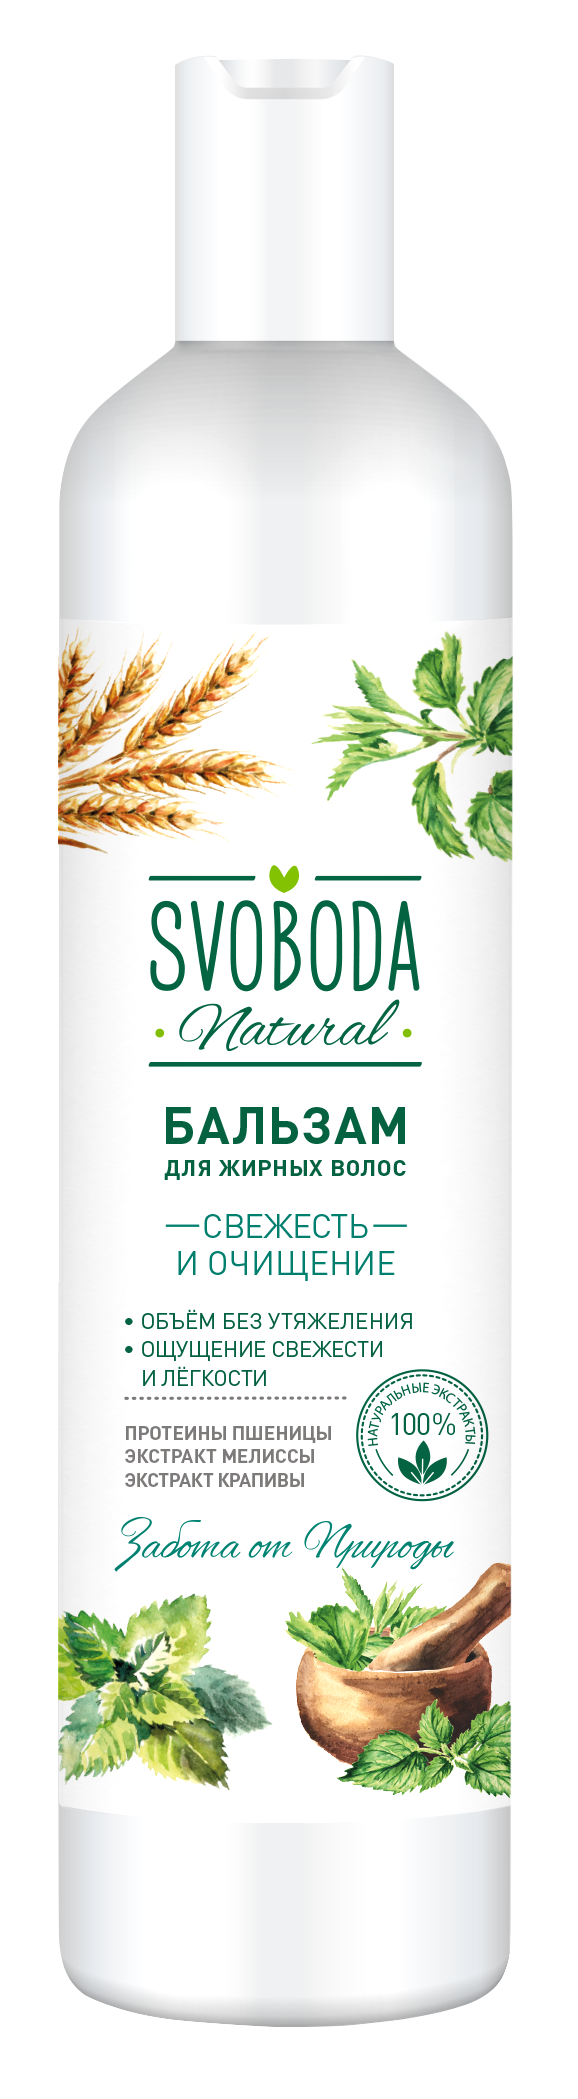 Бальзам-ополаскиватель SVOBODA для жирных волос экстракт мелиссы, экстракт крапивы, протеин пшеницы